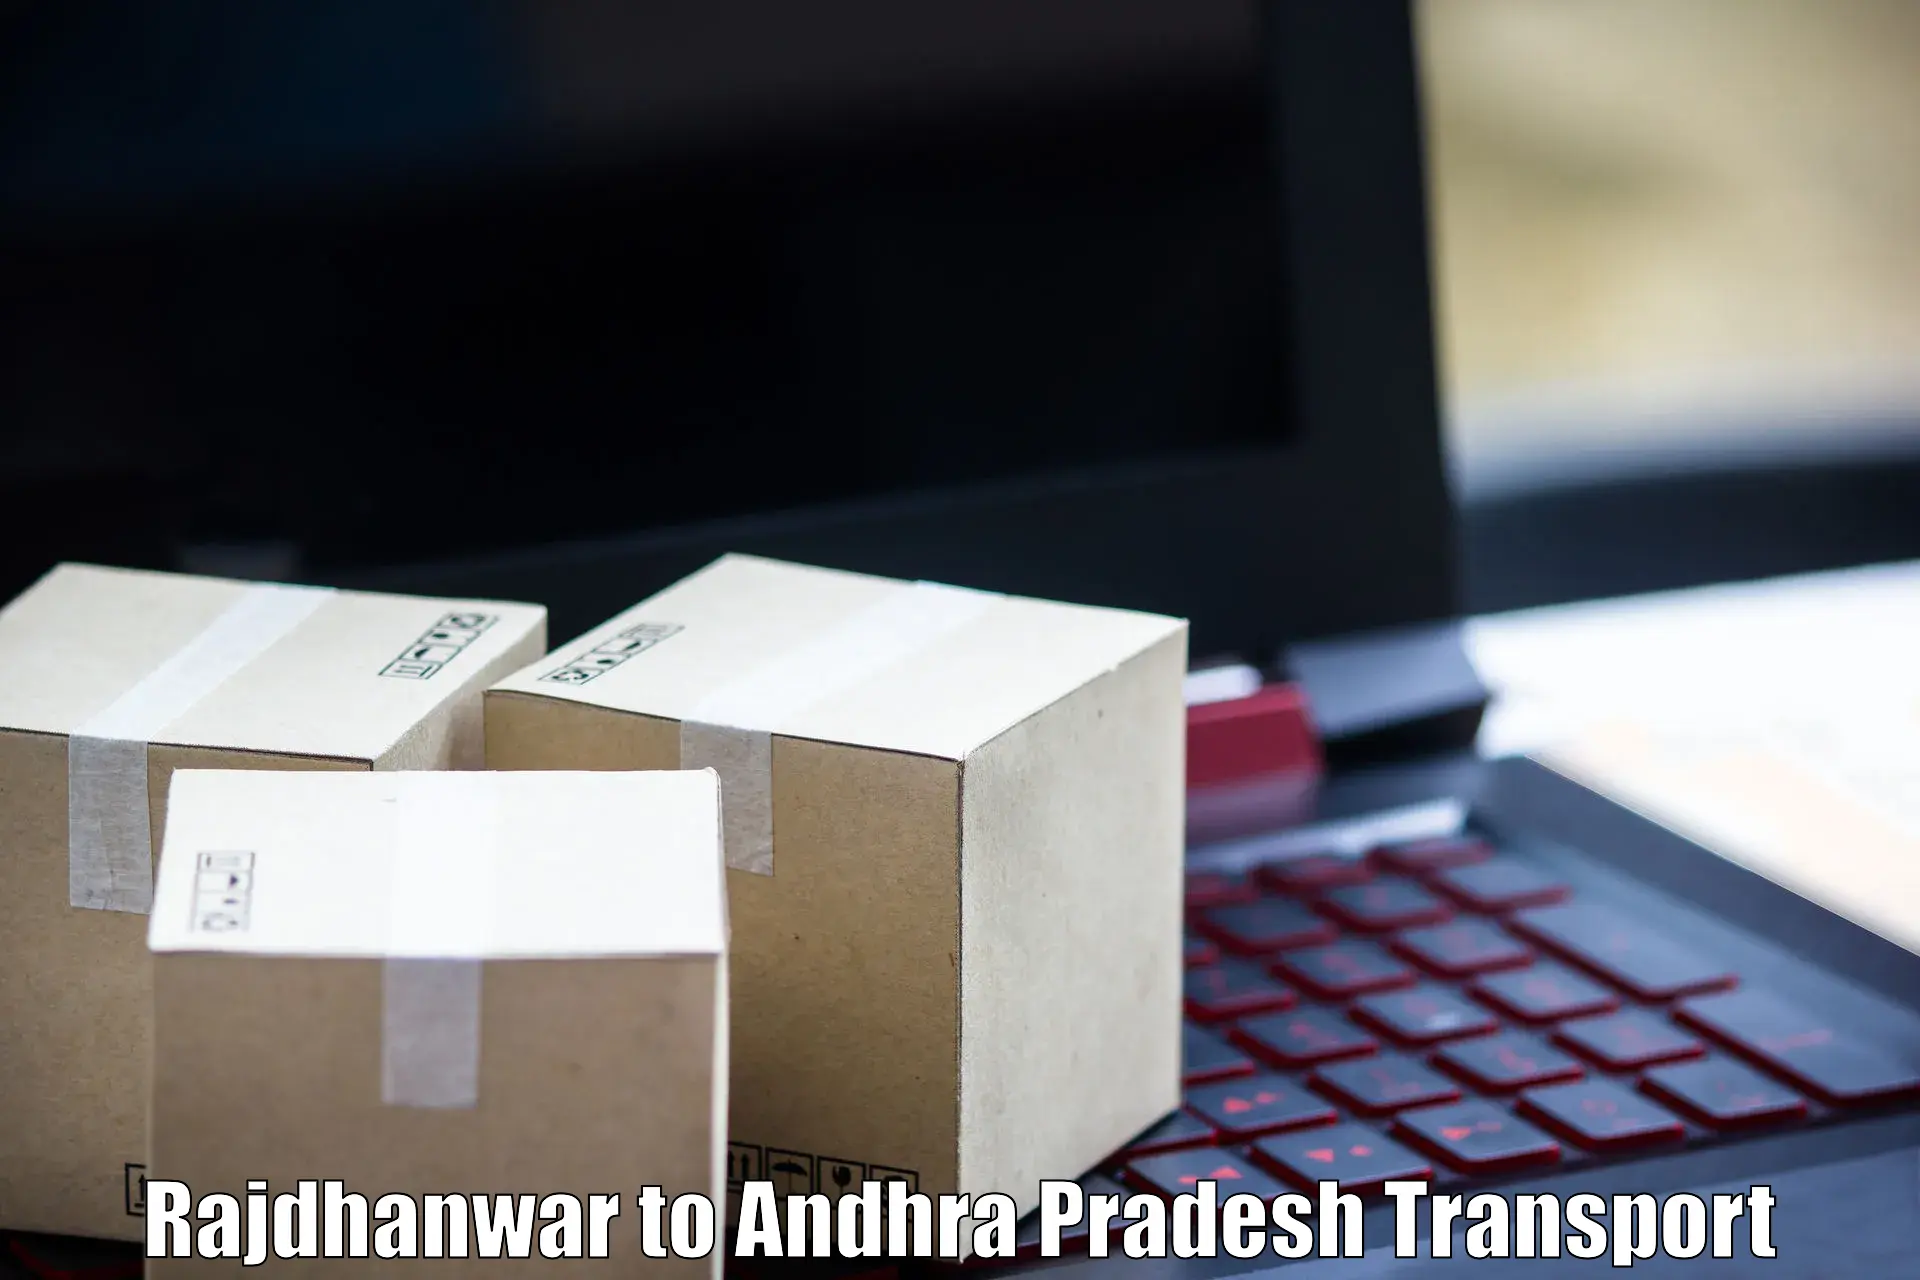 Daily parcel service transport Rajdhanwar to Kudair